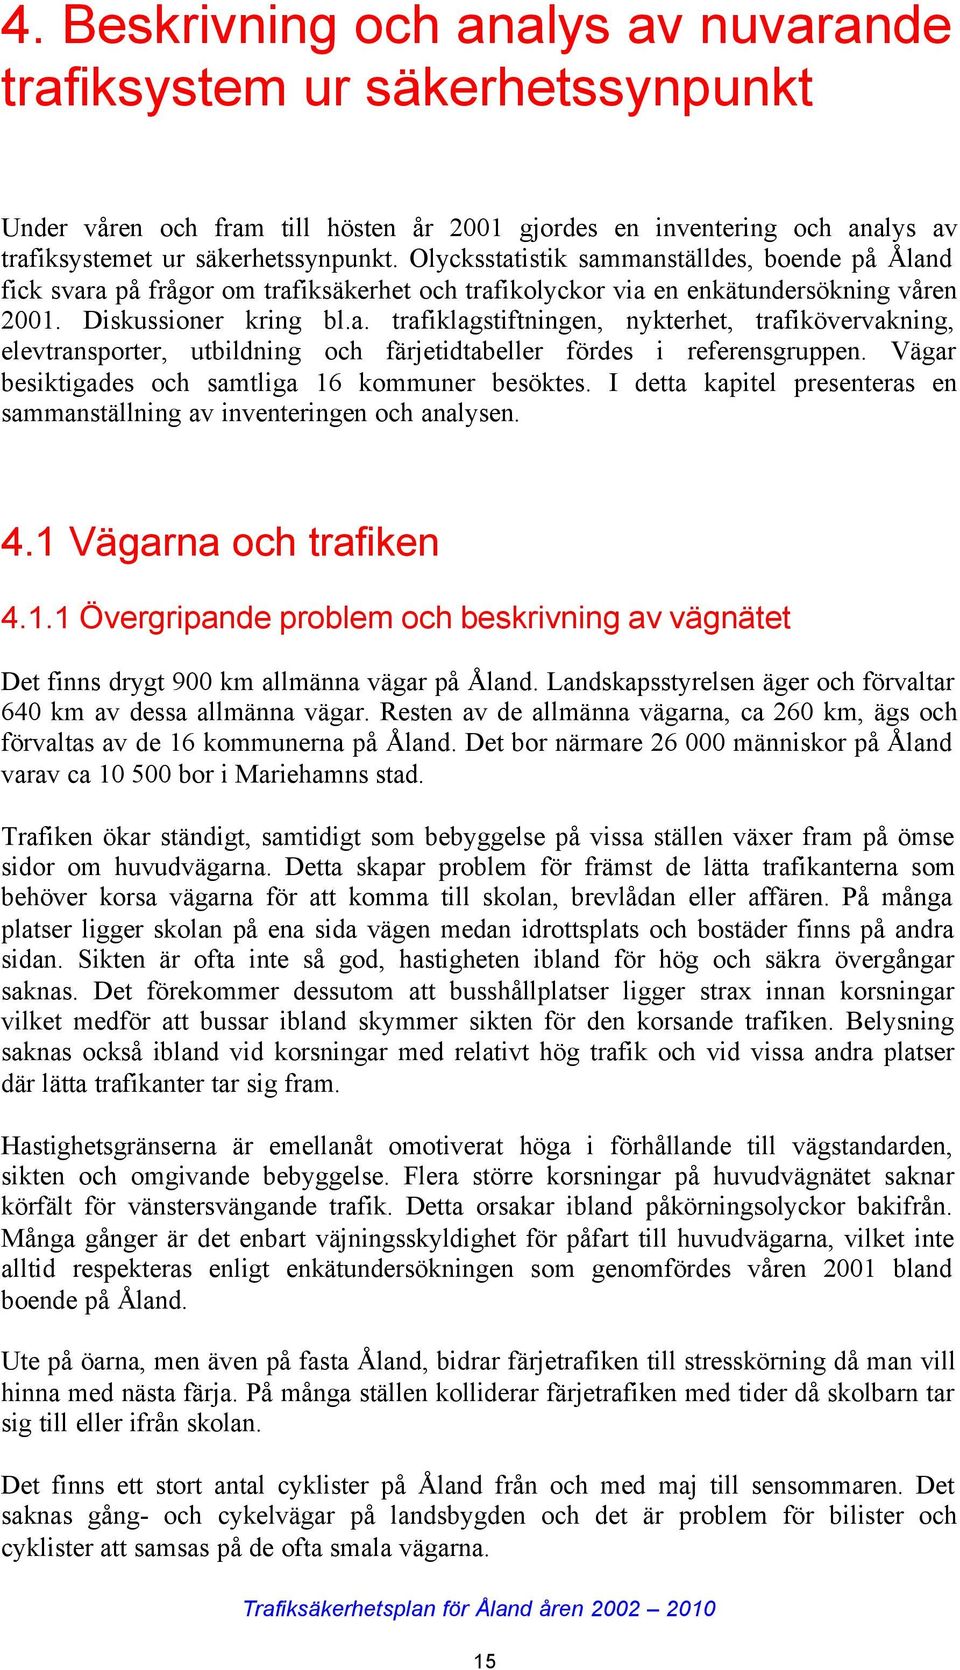 Vägar besiktigades och samtliga 16 kommuner besöktes. I detta kapitel presenteras en sammanställning av inventeringen och analysen. 4.1 Vägarna och trafiken 4.1.1 Övergripande problem och beskrivning av vägnätet Det finns drygt 900 km allmänna vägar på Åland.